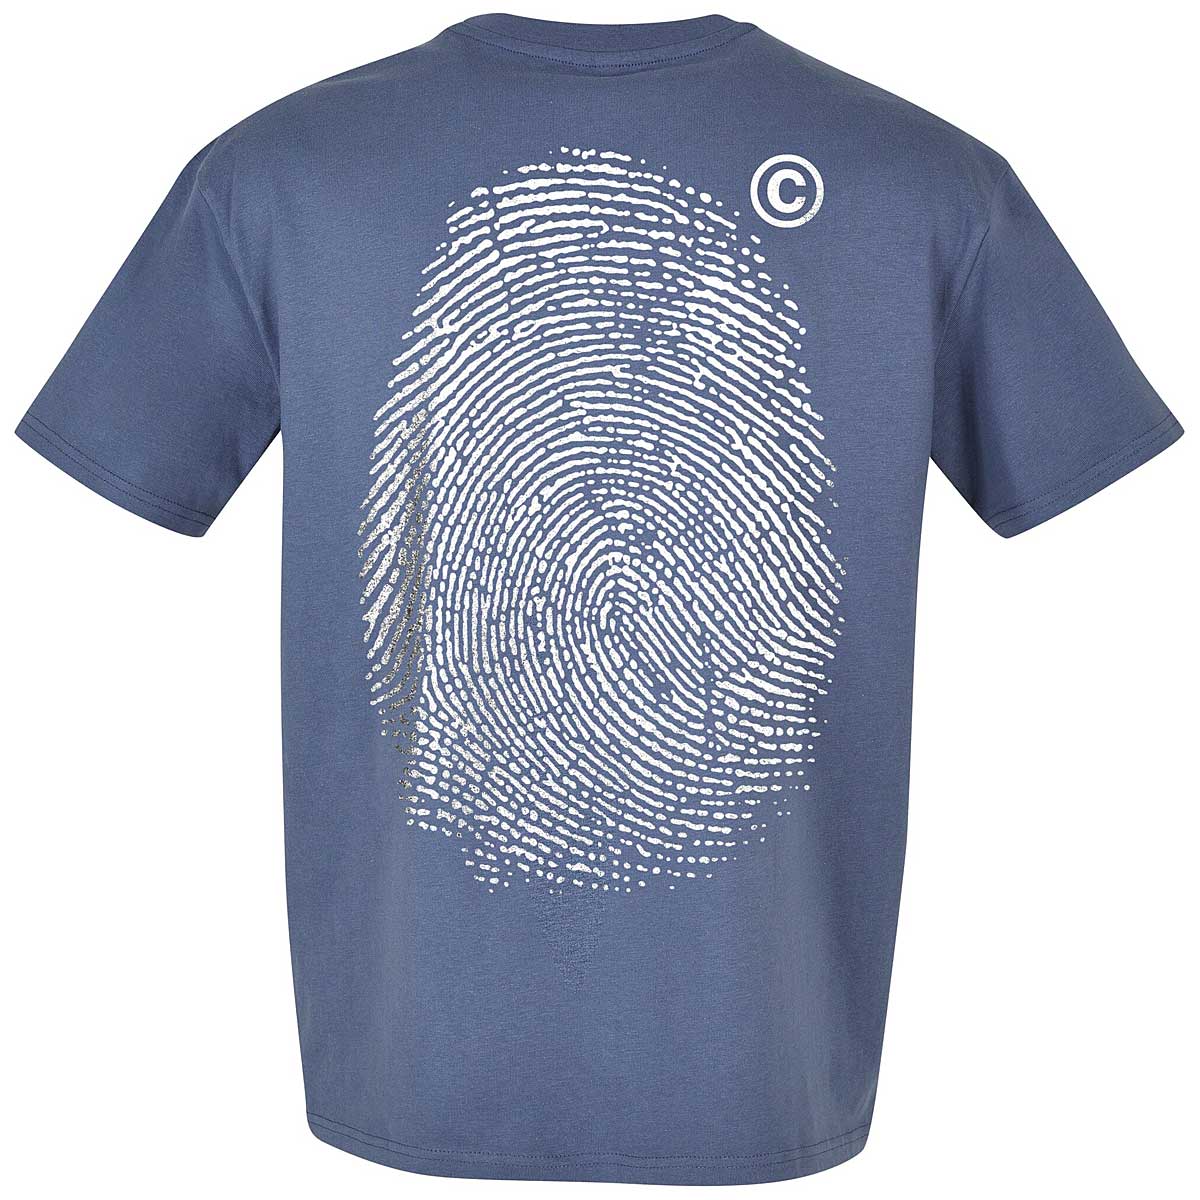 Modstander Rough sleep udstrømning Buy Fingerprint Oversize T-Shirt for EUR 28.90 on KICKZ.com!